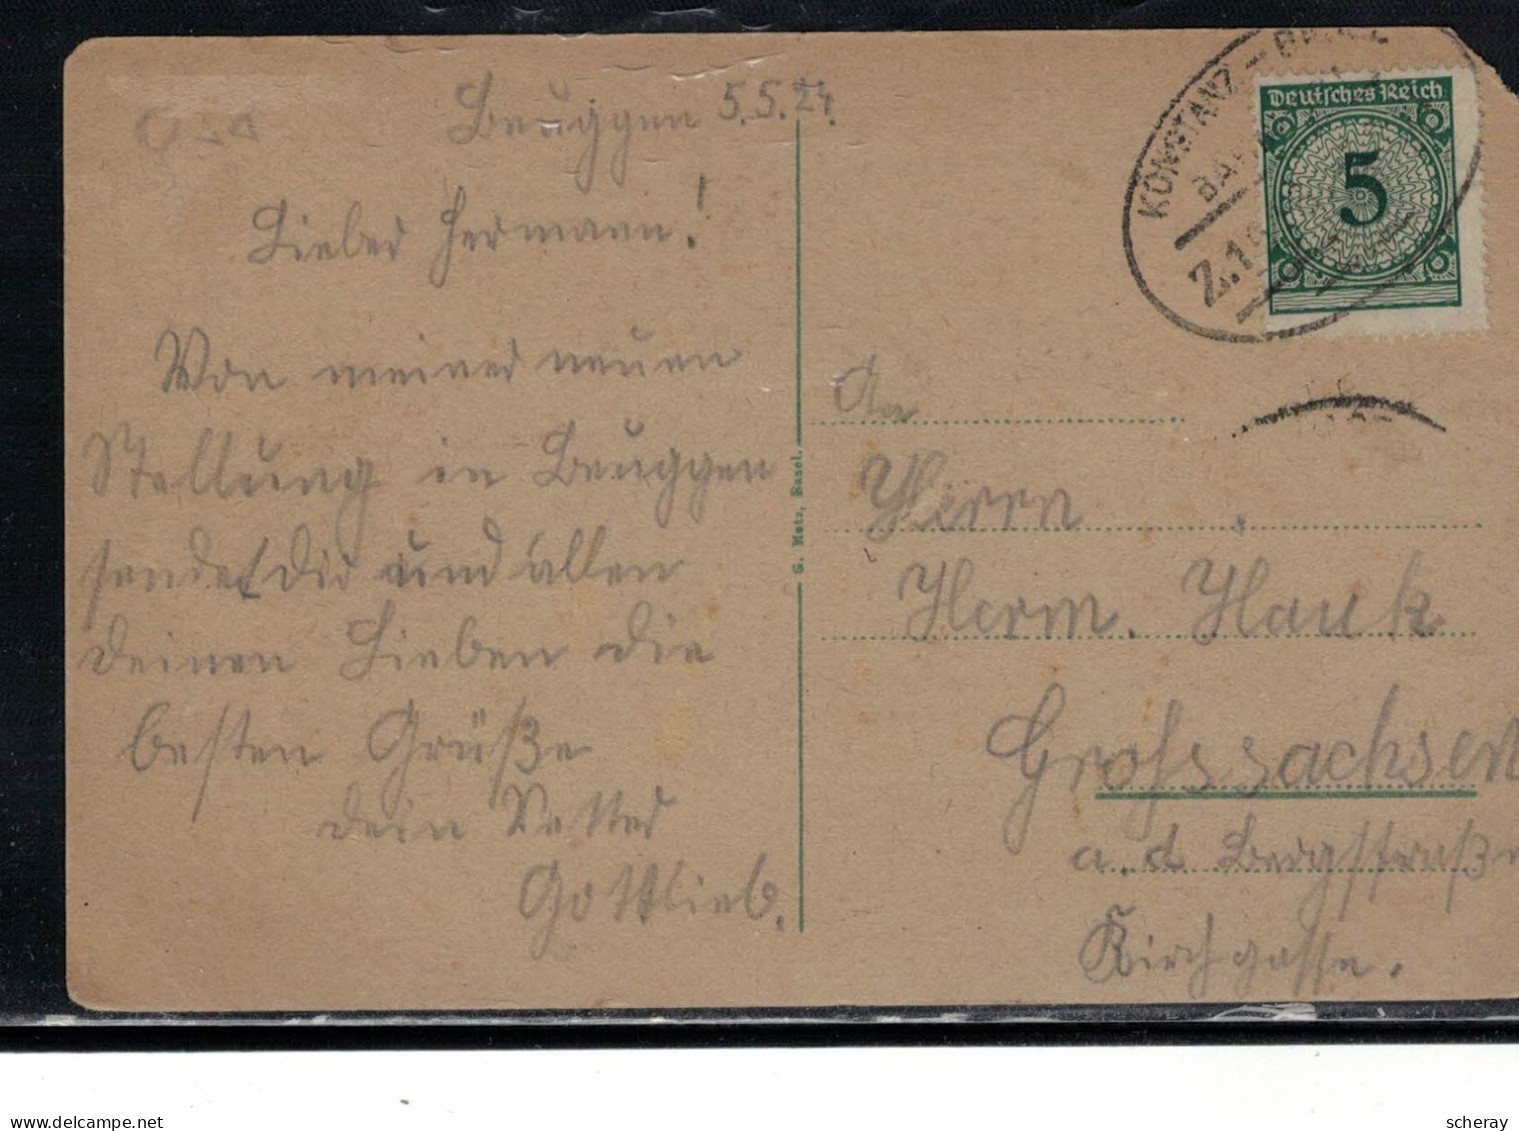 C/P ECRITE BEUGGEN 5/5/1924 OBLITERATION KONSTANZ BAHNHOFPOST SUR 5 REICH VERT ( Lot 044 )  Voir Scan - Lettres & Documents